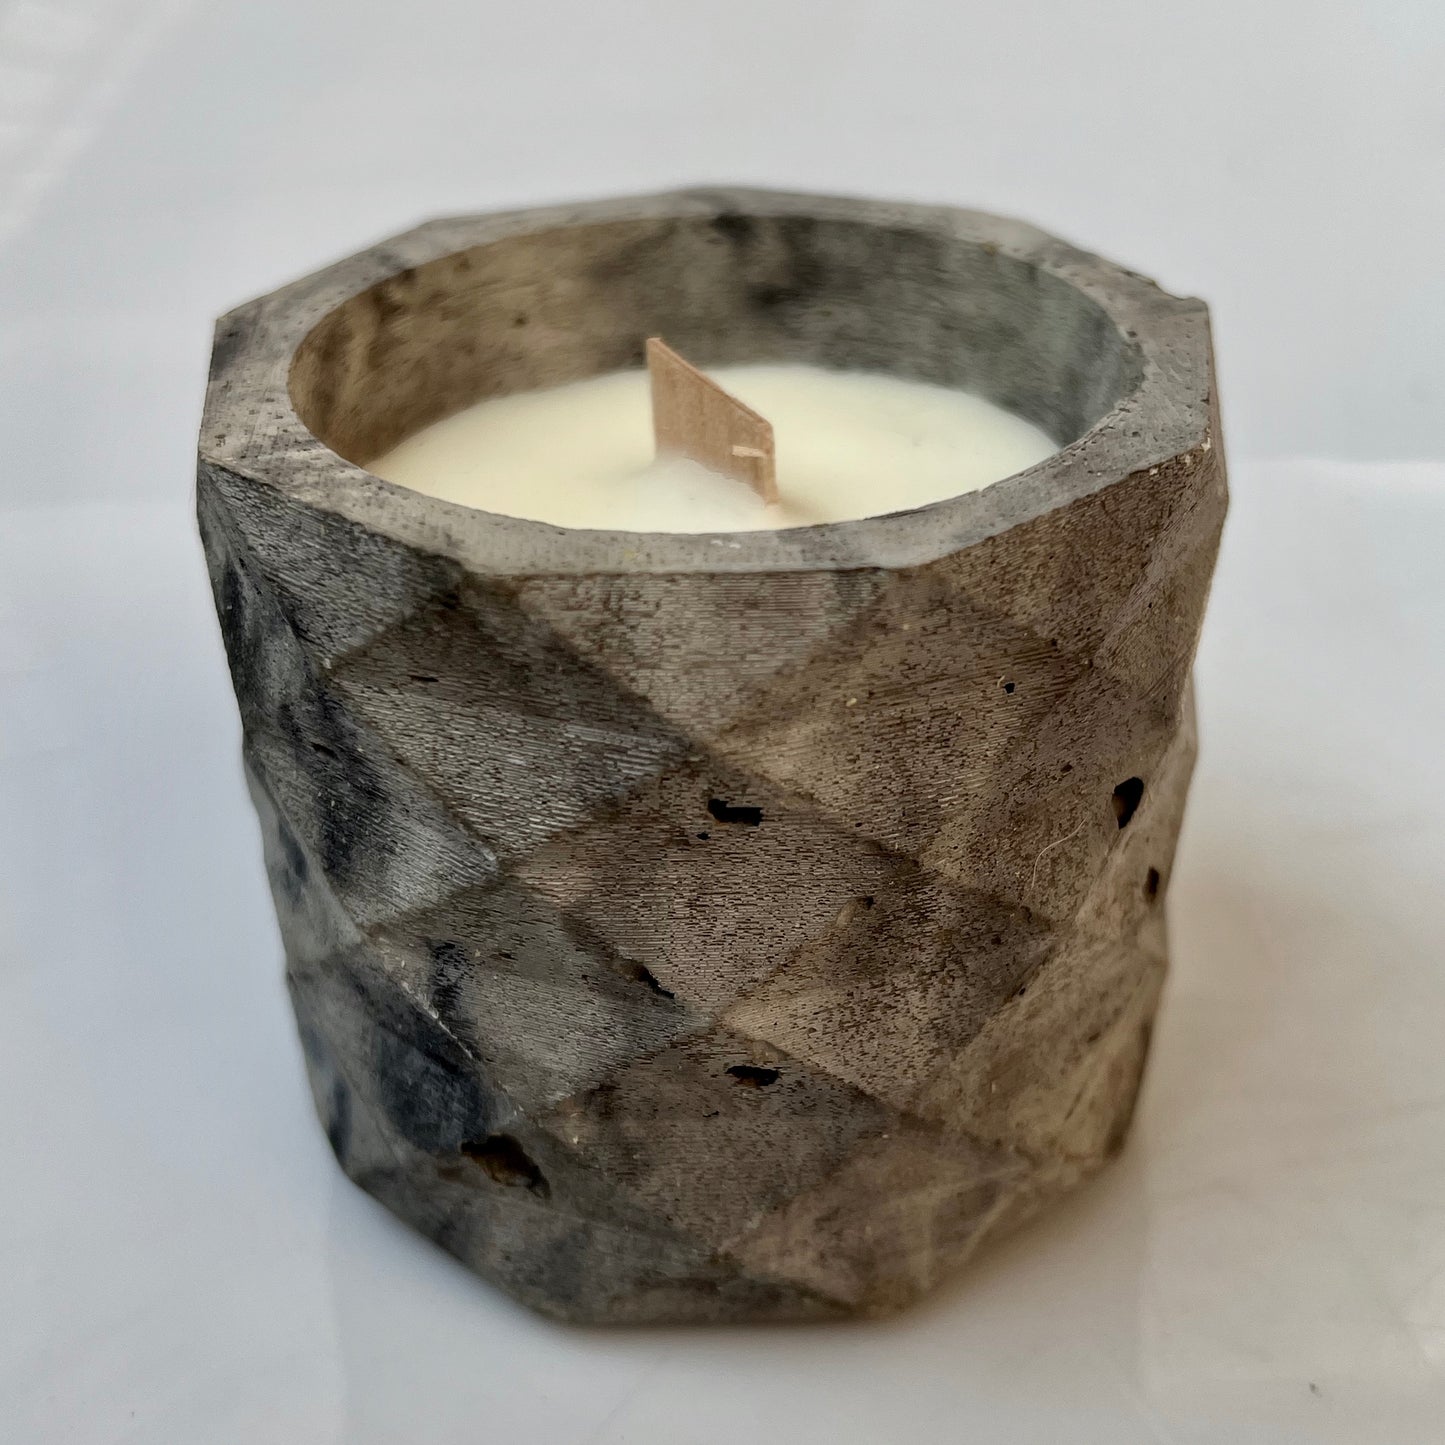 candela Penelope in cemento e cera di soia profumata con oli essenziali naturali colore marmorizzato grigio 